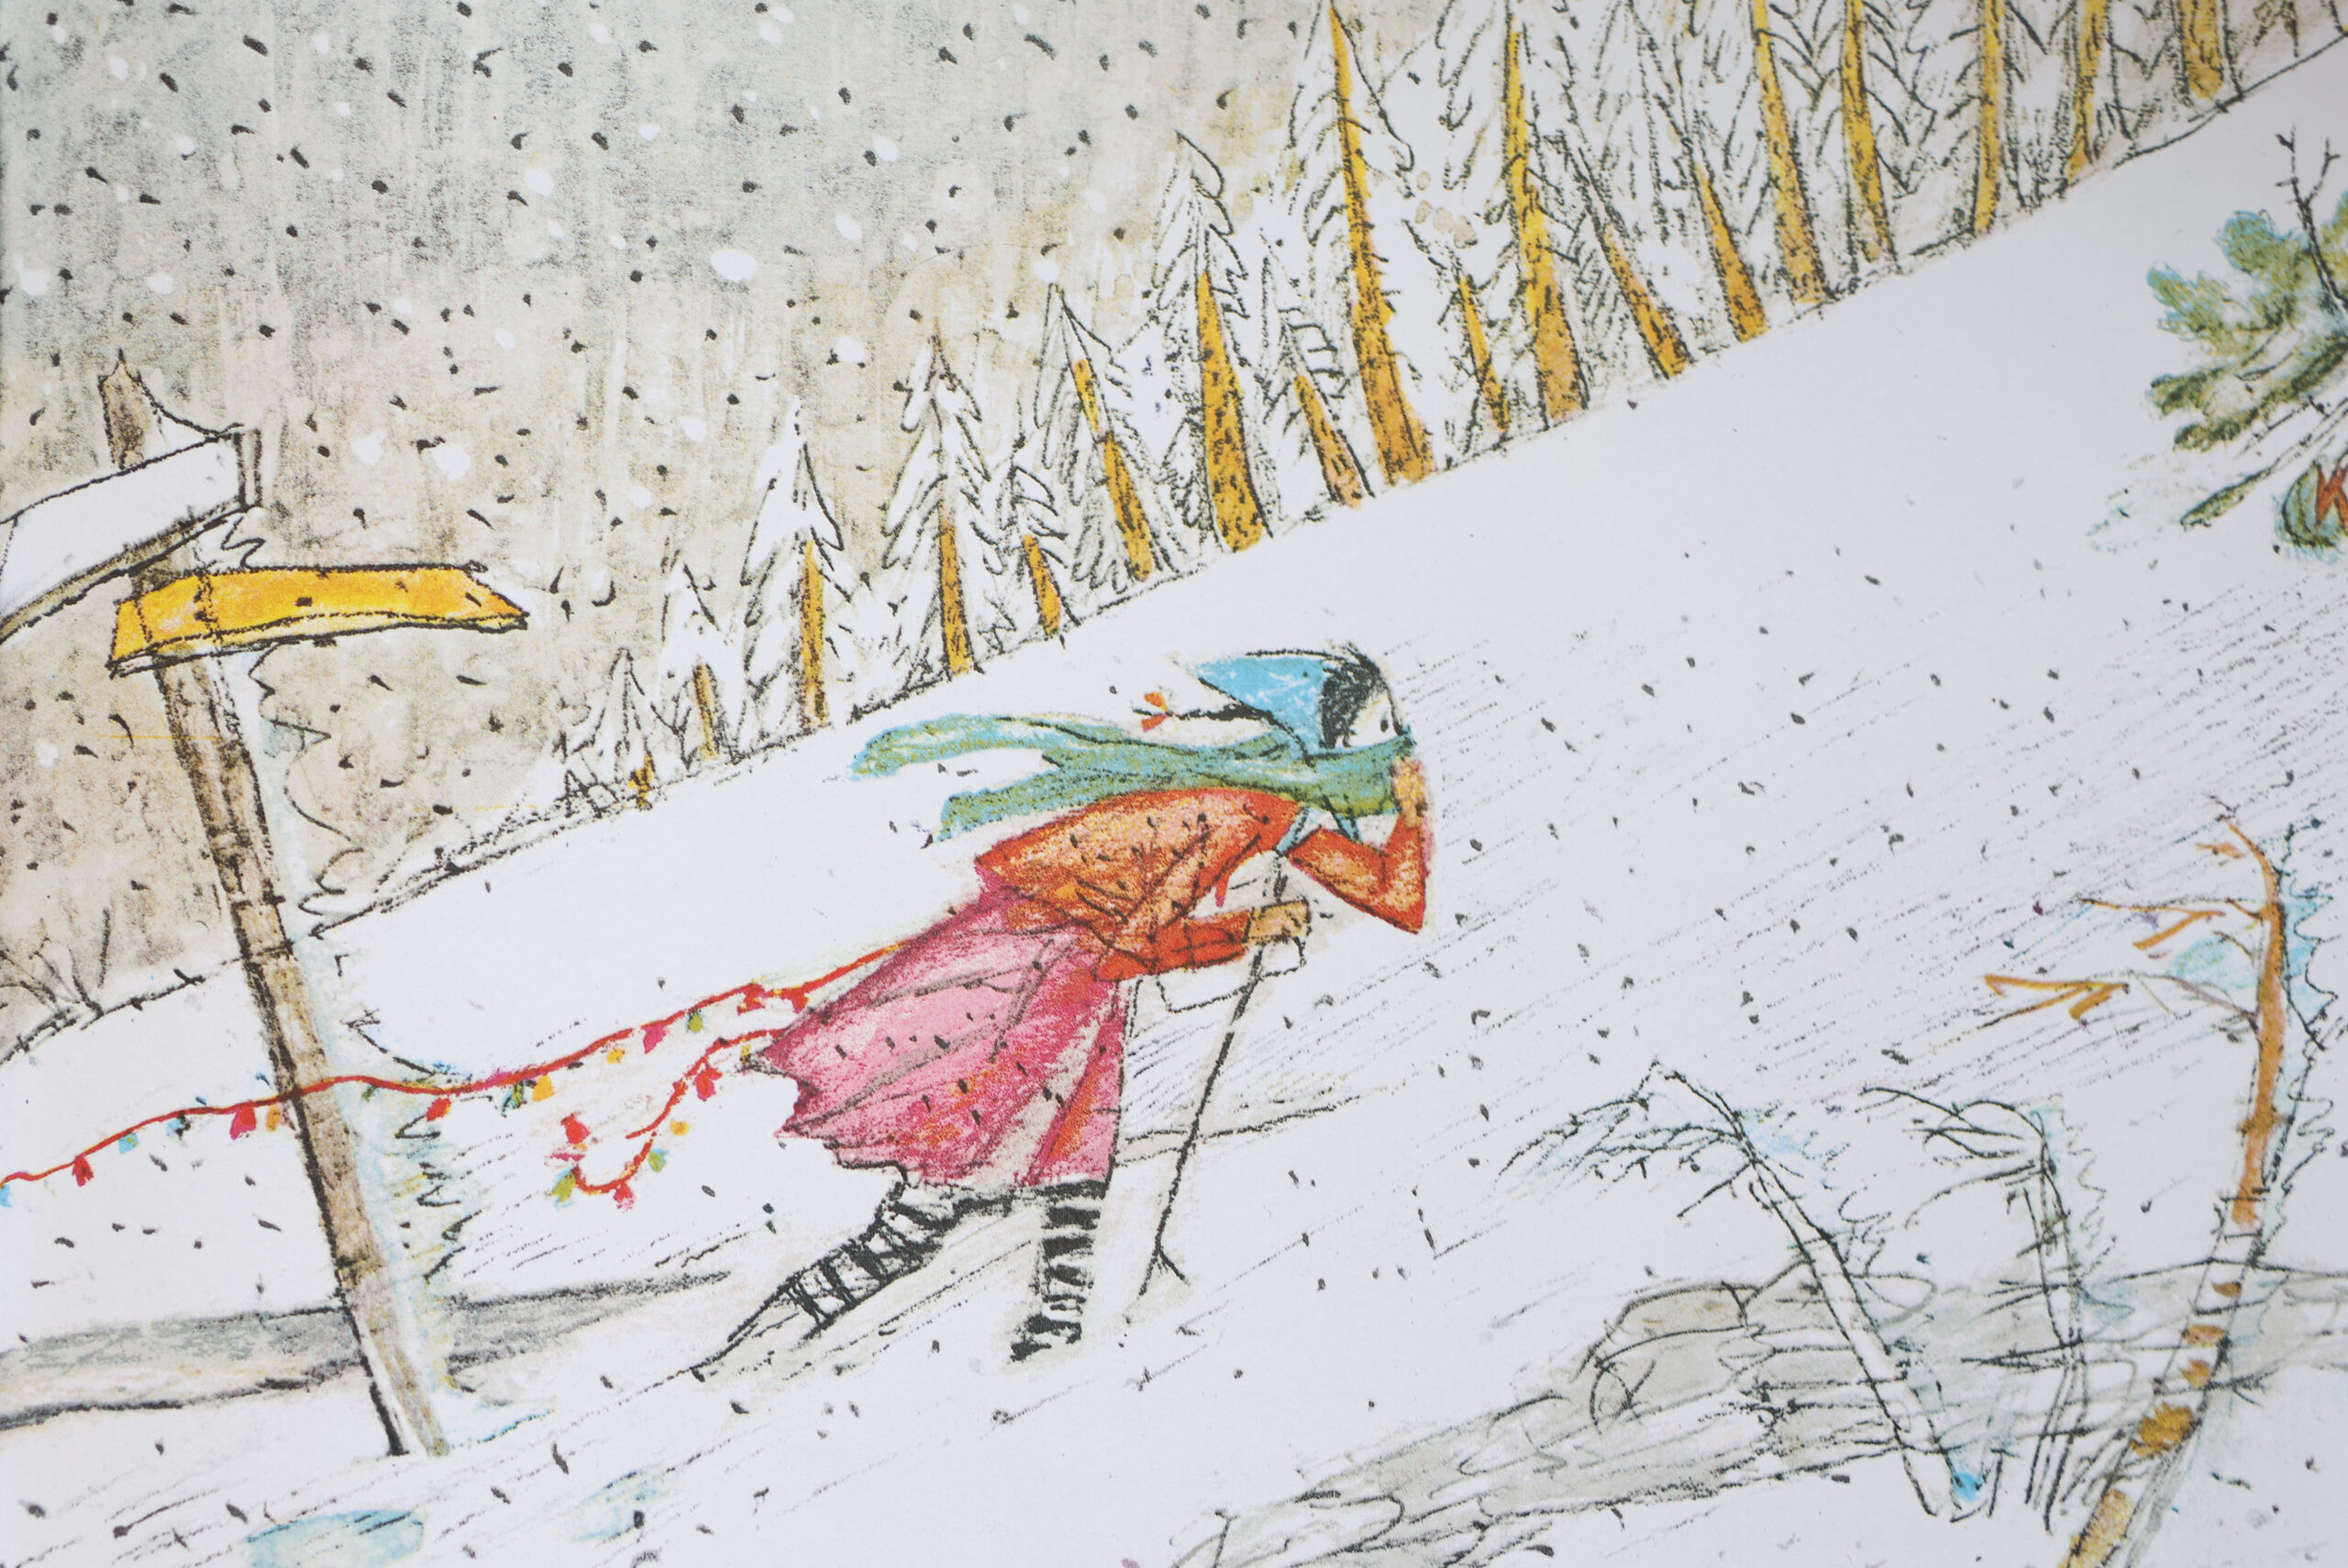 Au milieu d'un paysage enneigé, une petite fille vêtue d'habits colorés lutte pour avancer contre le vent dans une tempête de neige.